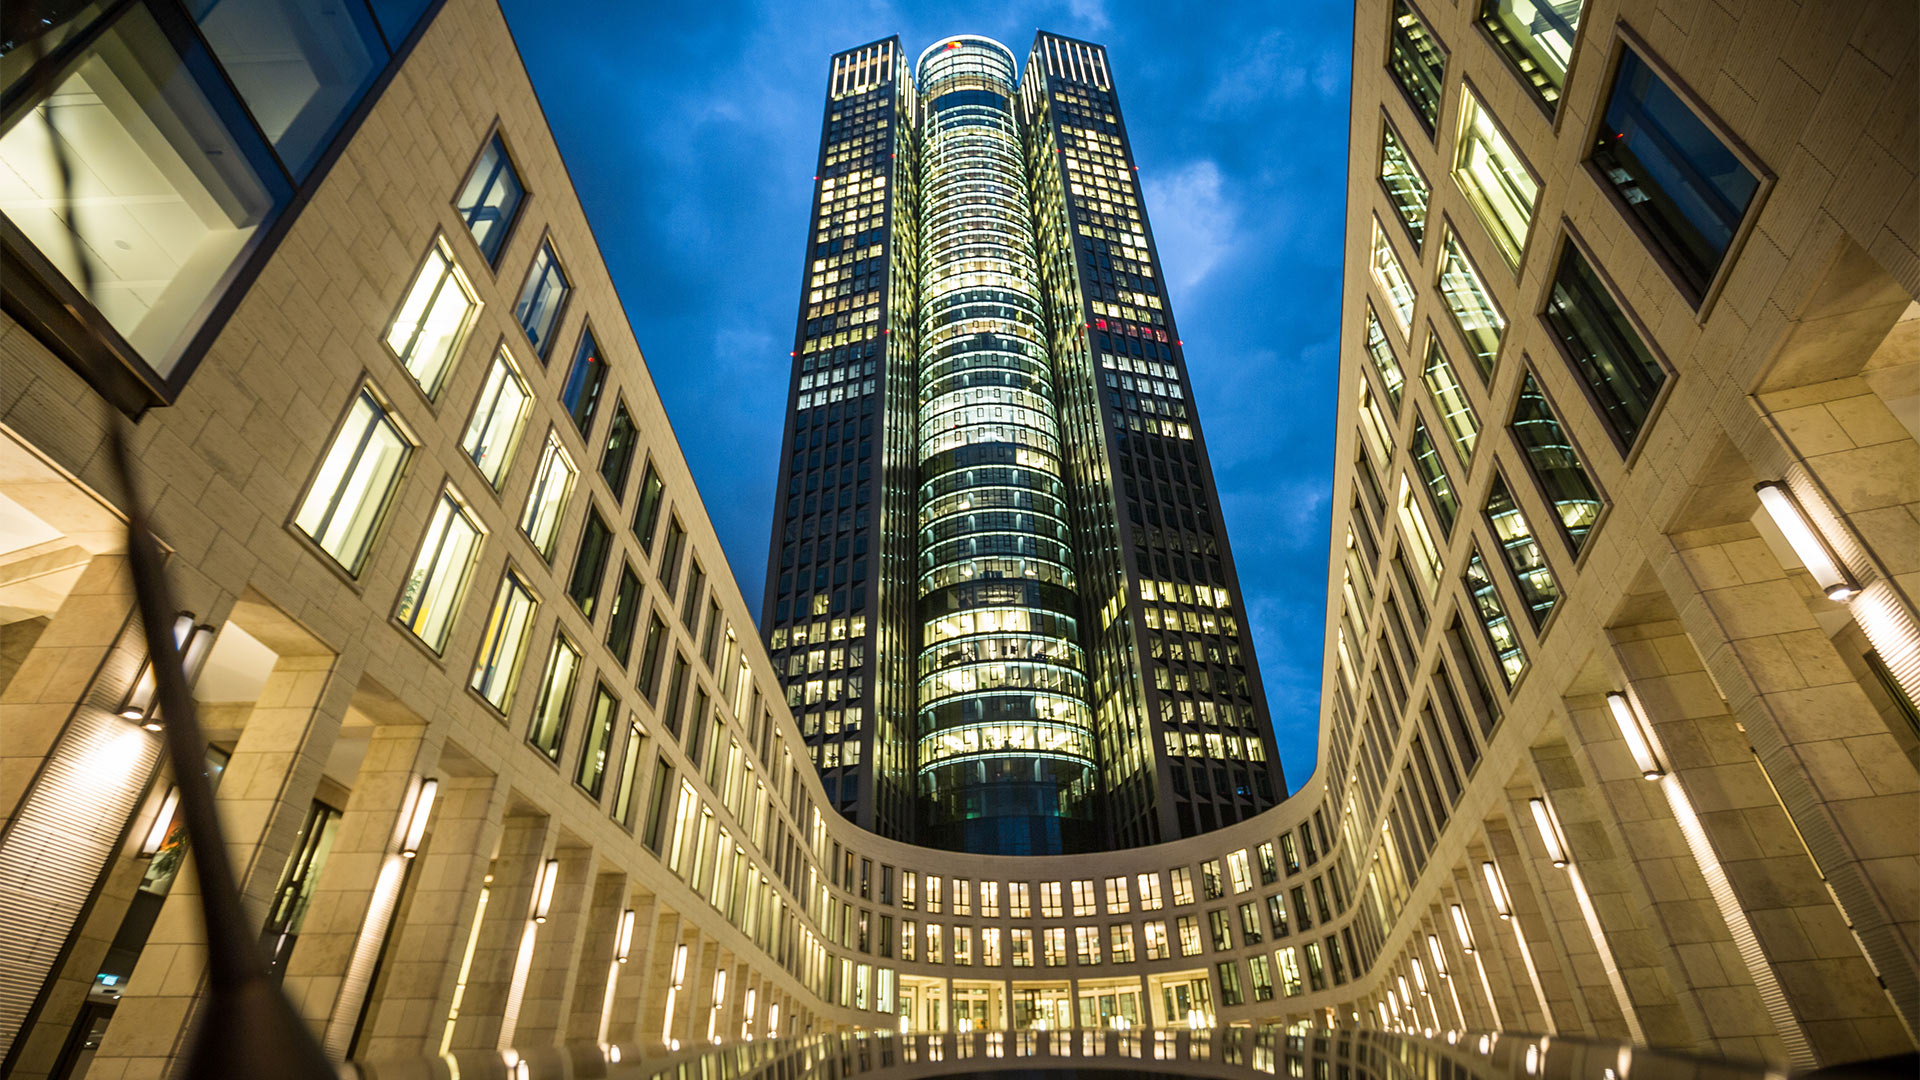 Deutschland-Zentrale der PricewaterhouseCoopers Aktiengesellschaft Wirtschaftsprüfungsgesellschaft (PwC) in Frankfurt am Main | picture alliance / dpa